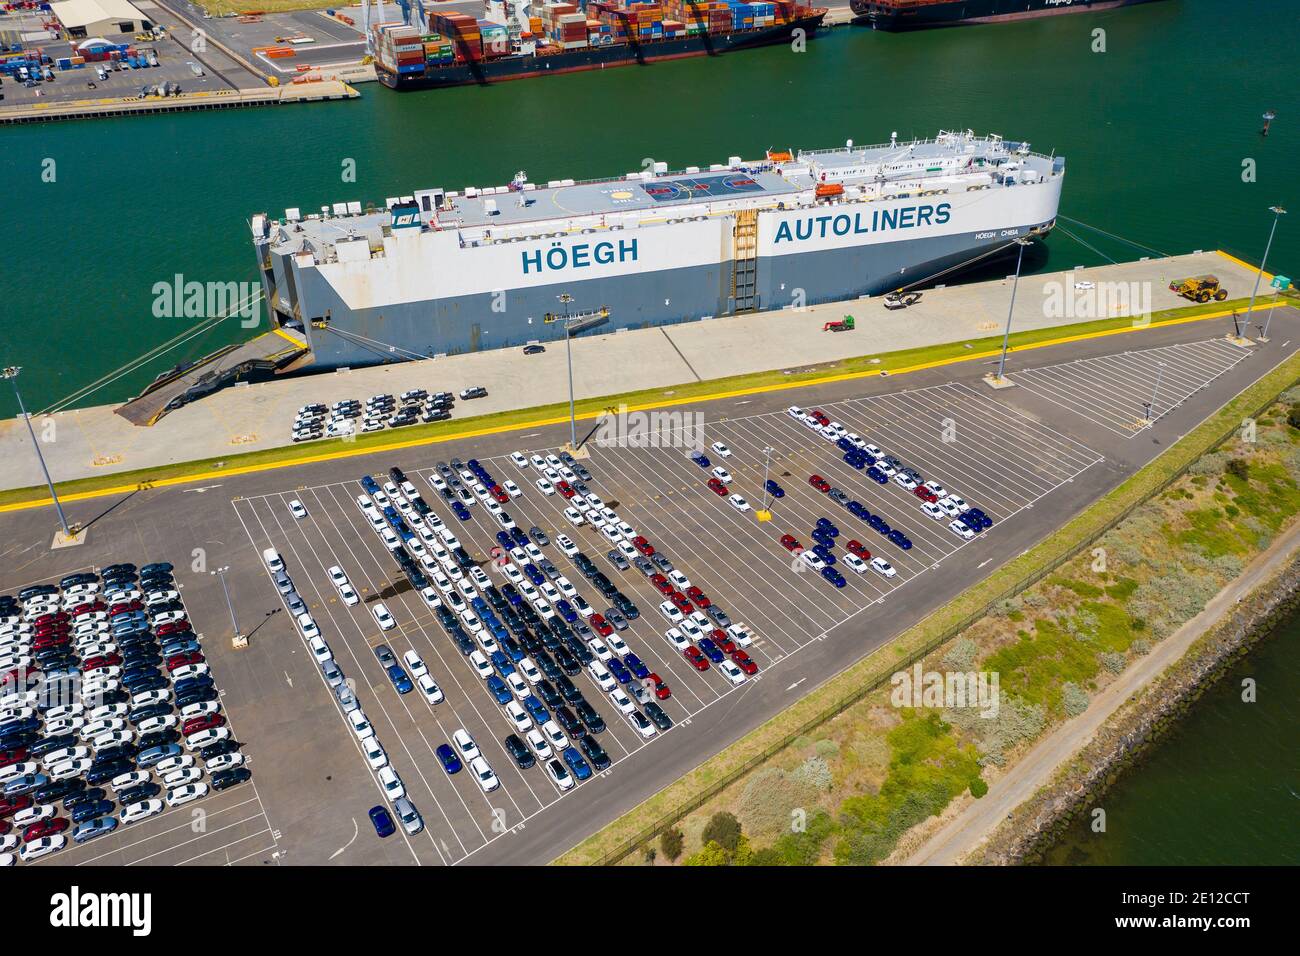 Luftbild von Fahrzeugen, die darauf warten, auf das Auto geladen zu werden Träger am Hafen Stockfoto